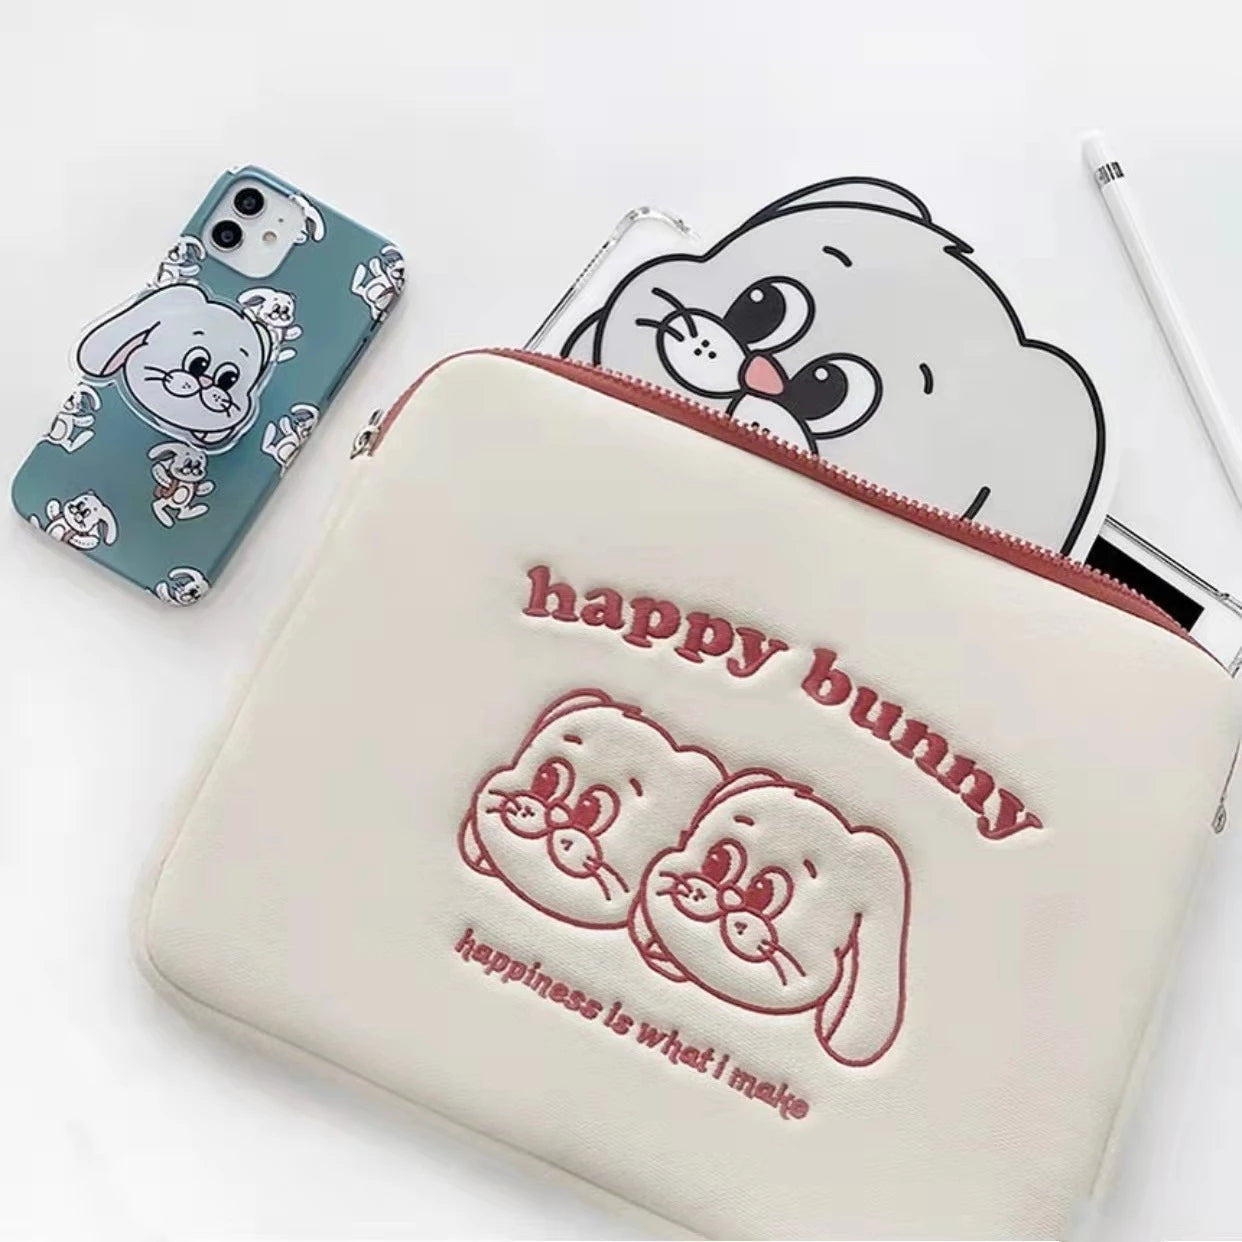 Happy Bunny - iPad Bag